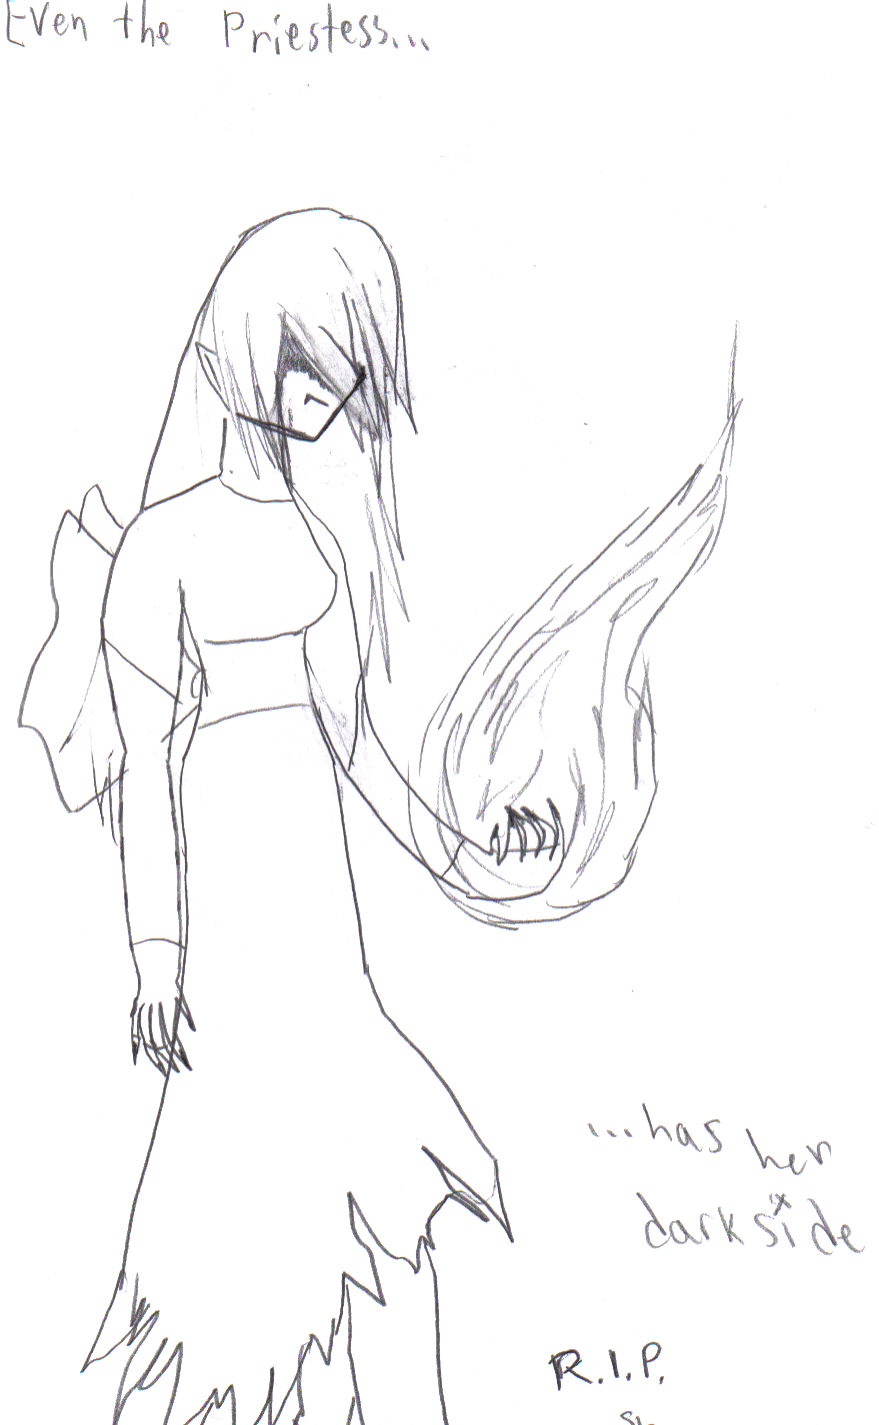 Even the Priestess...has Her Dark Side by Meisaroku